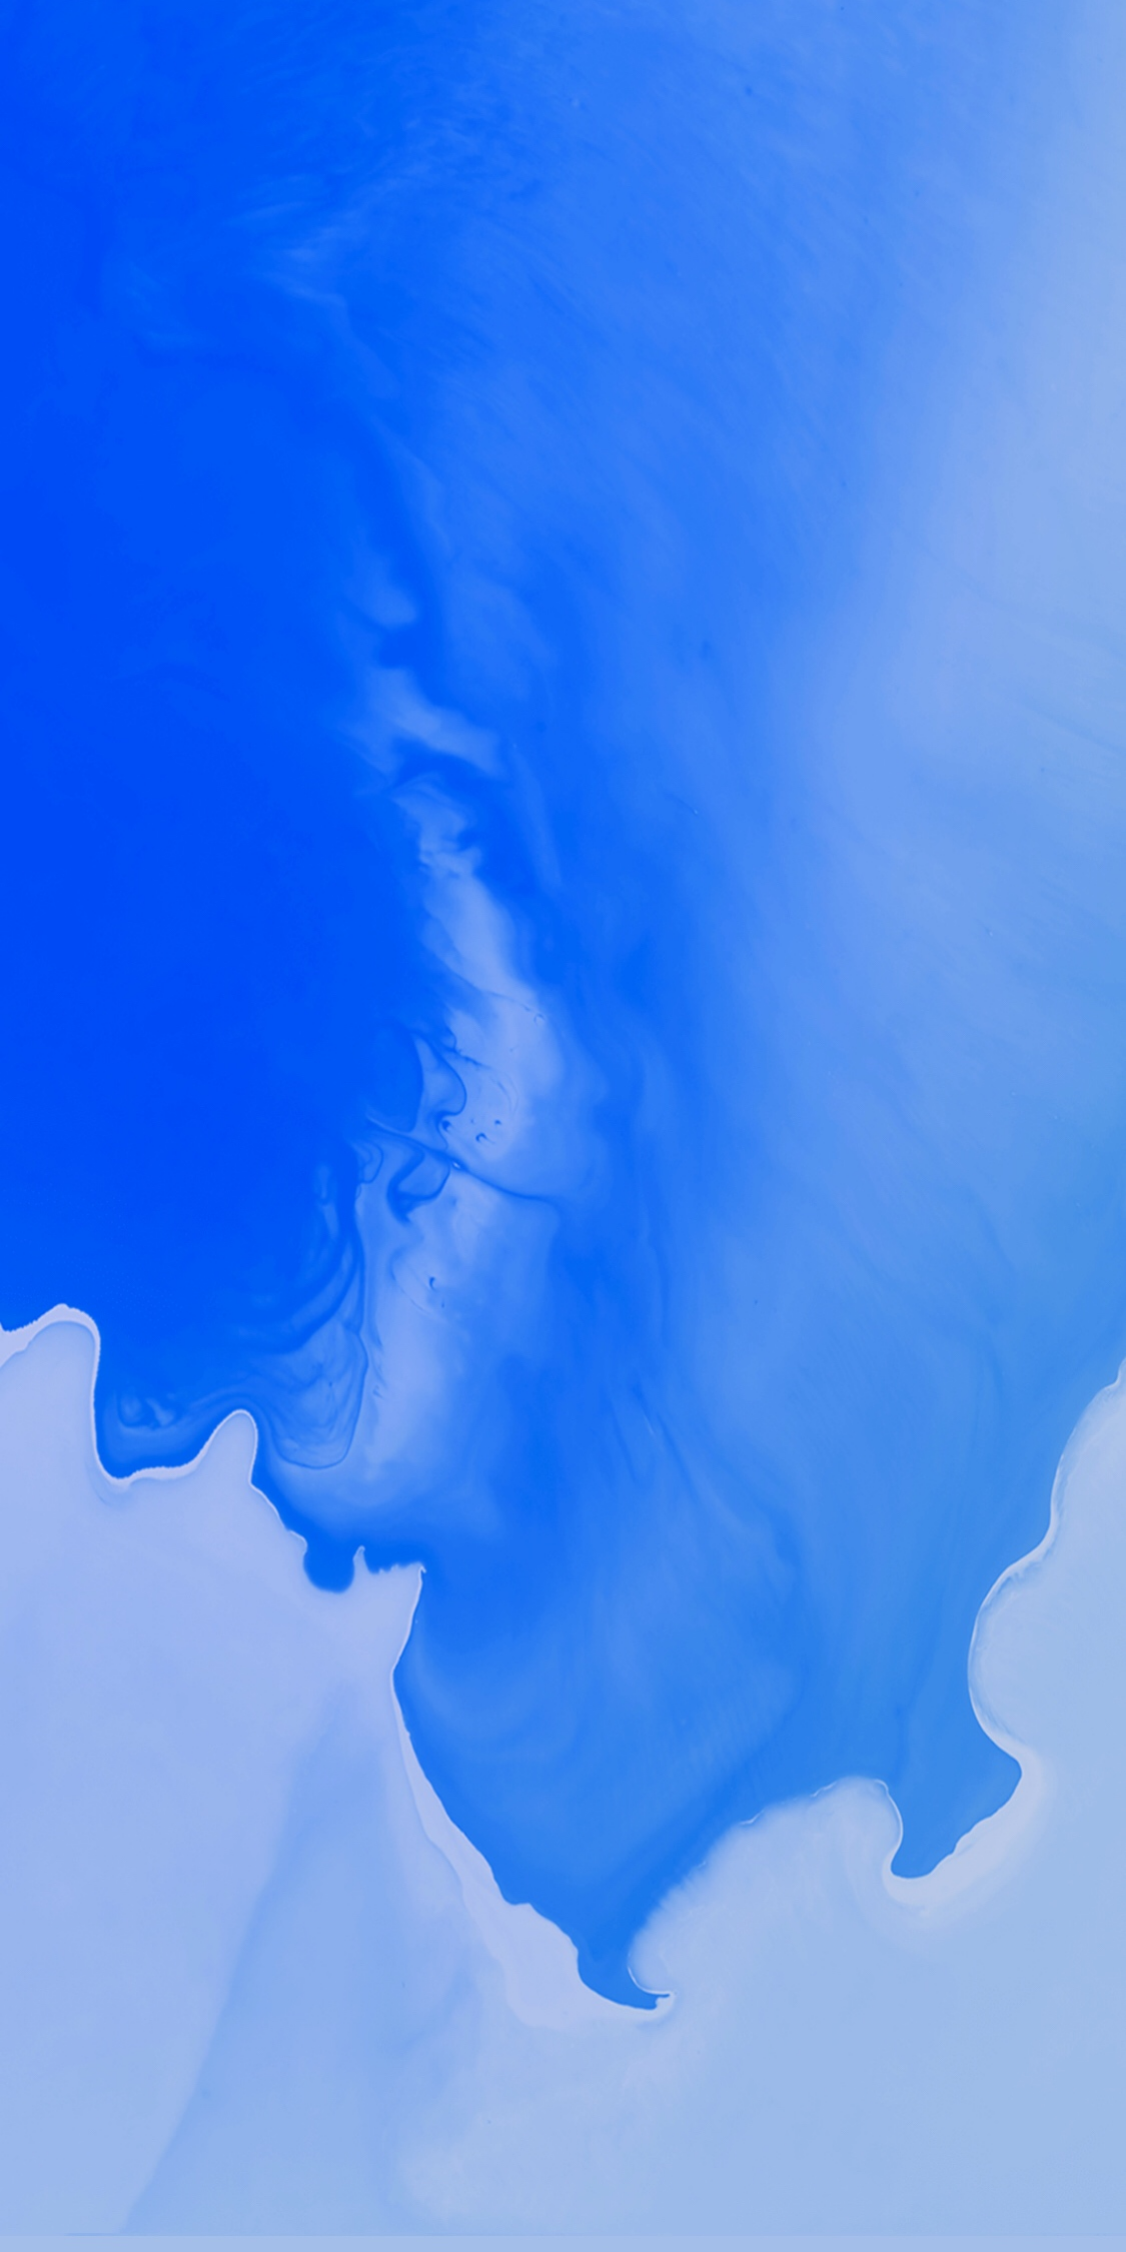 fond d'écran par défaut android,bleu,ciel,nuage,bleu cobalt,bleu électrique